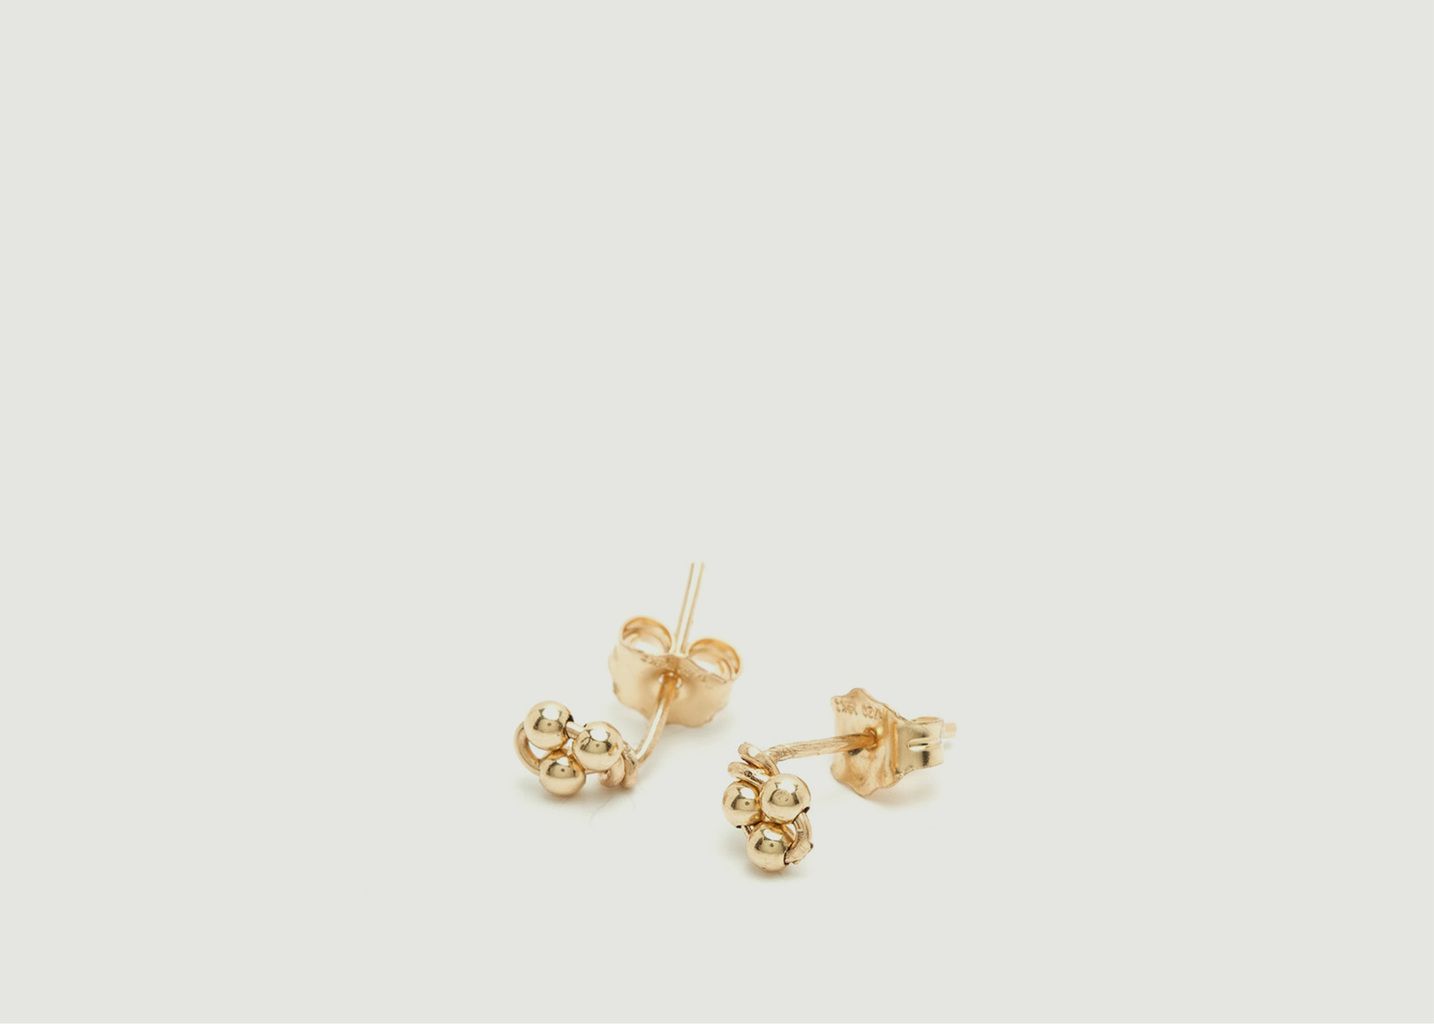 Grelots gold filled stud earrings - YAY